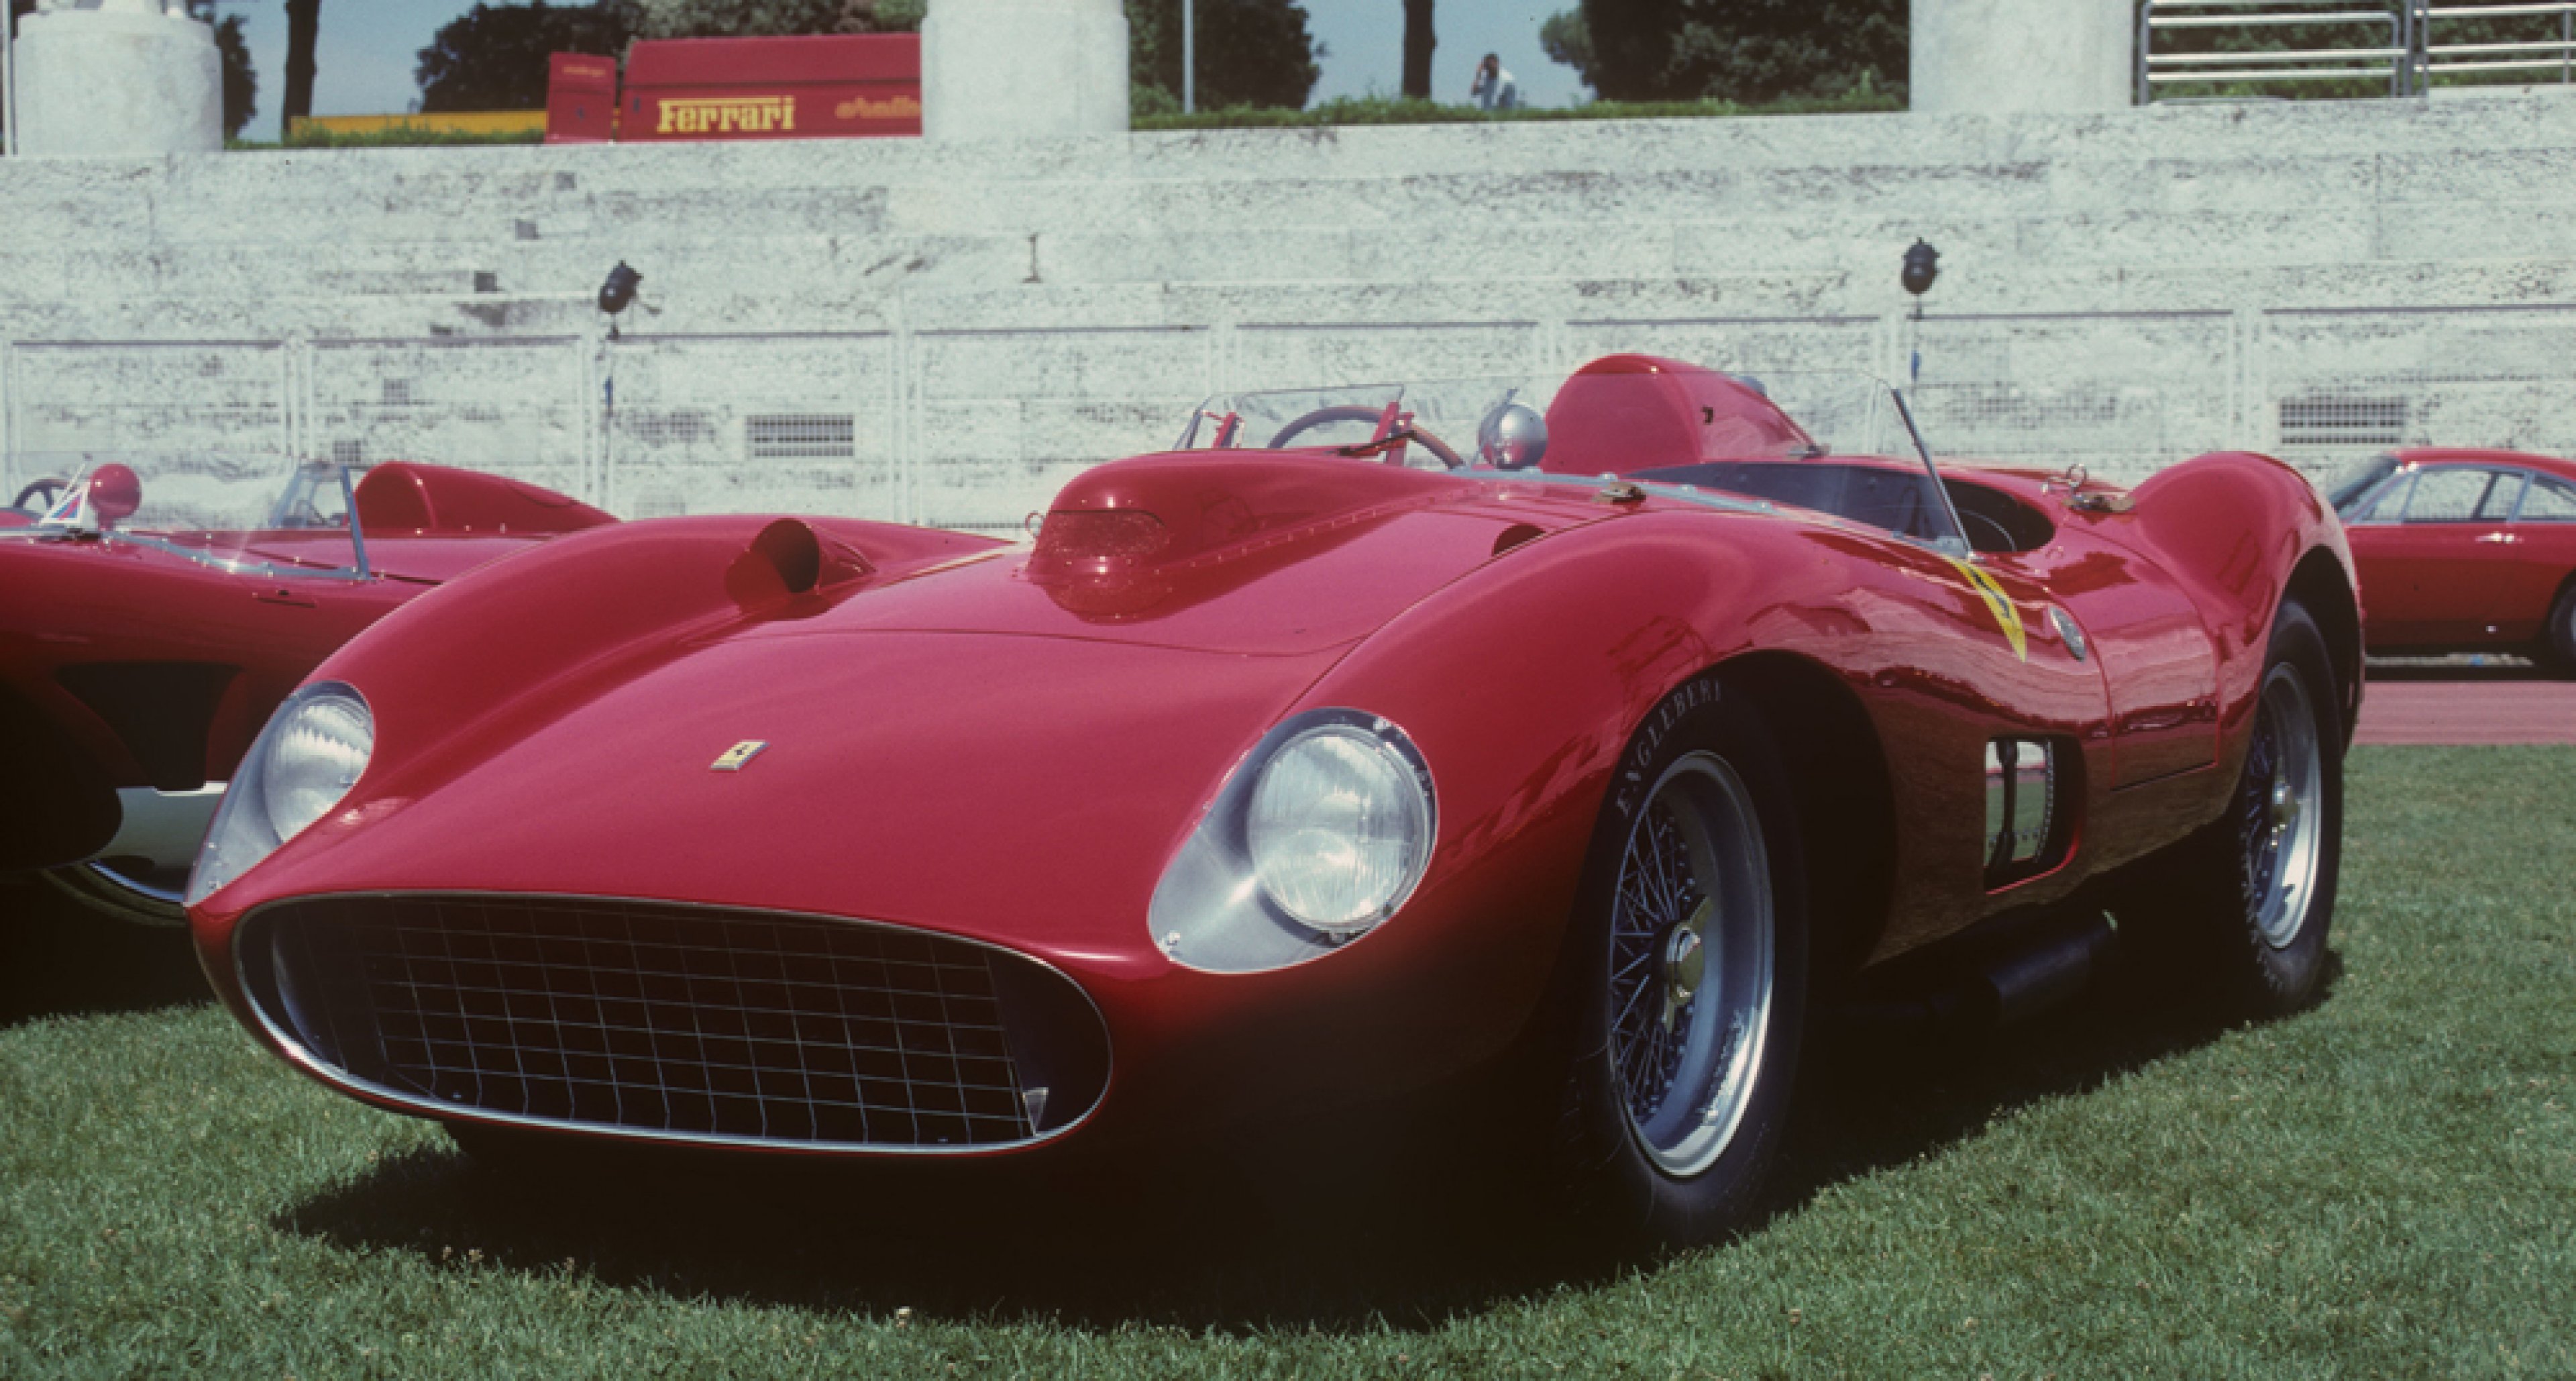 1957 Ferrari 335 S Scaglietti Spider, chassis 0674, estimate 28 - 32 M€ / 30 – 34 M$ Rome 1997, © Marcel Massini